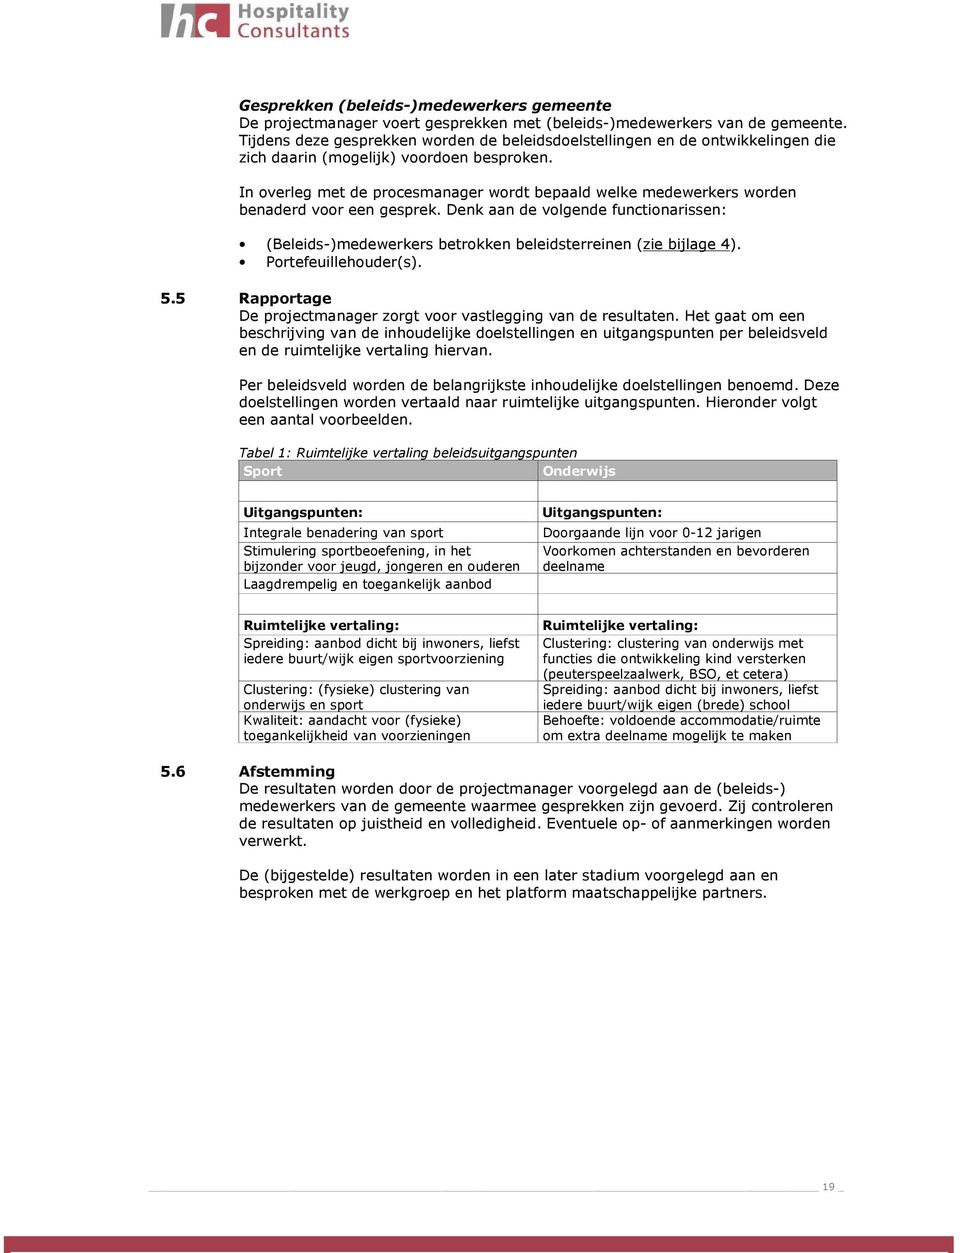 betrokken beleidsterreinen (zie bijlage 4) Portefeuillehouder(s) 55 Rapportage De projectmanager zorgt voor vastlegging van de resultaten Het gaat om een beschrijving van de inhoudelijke